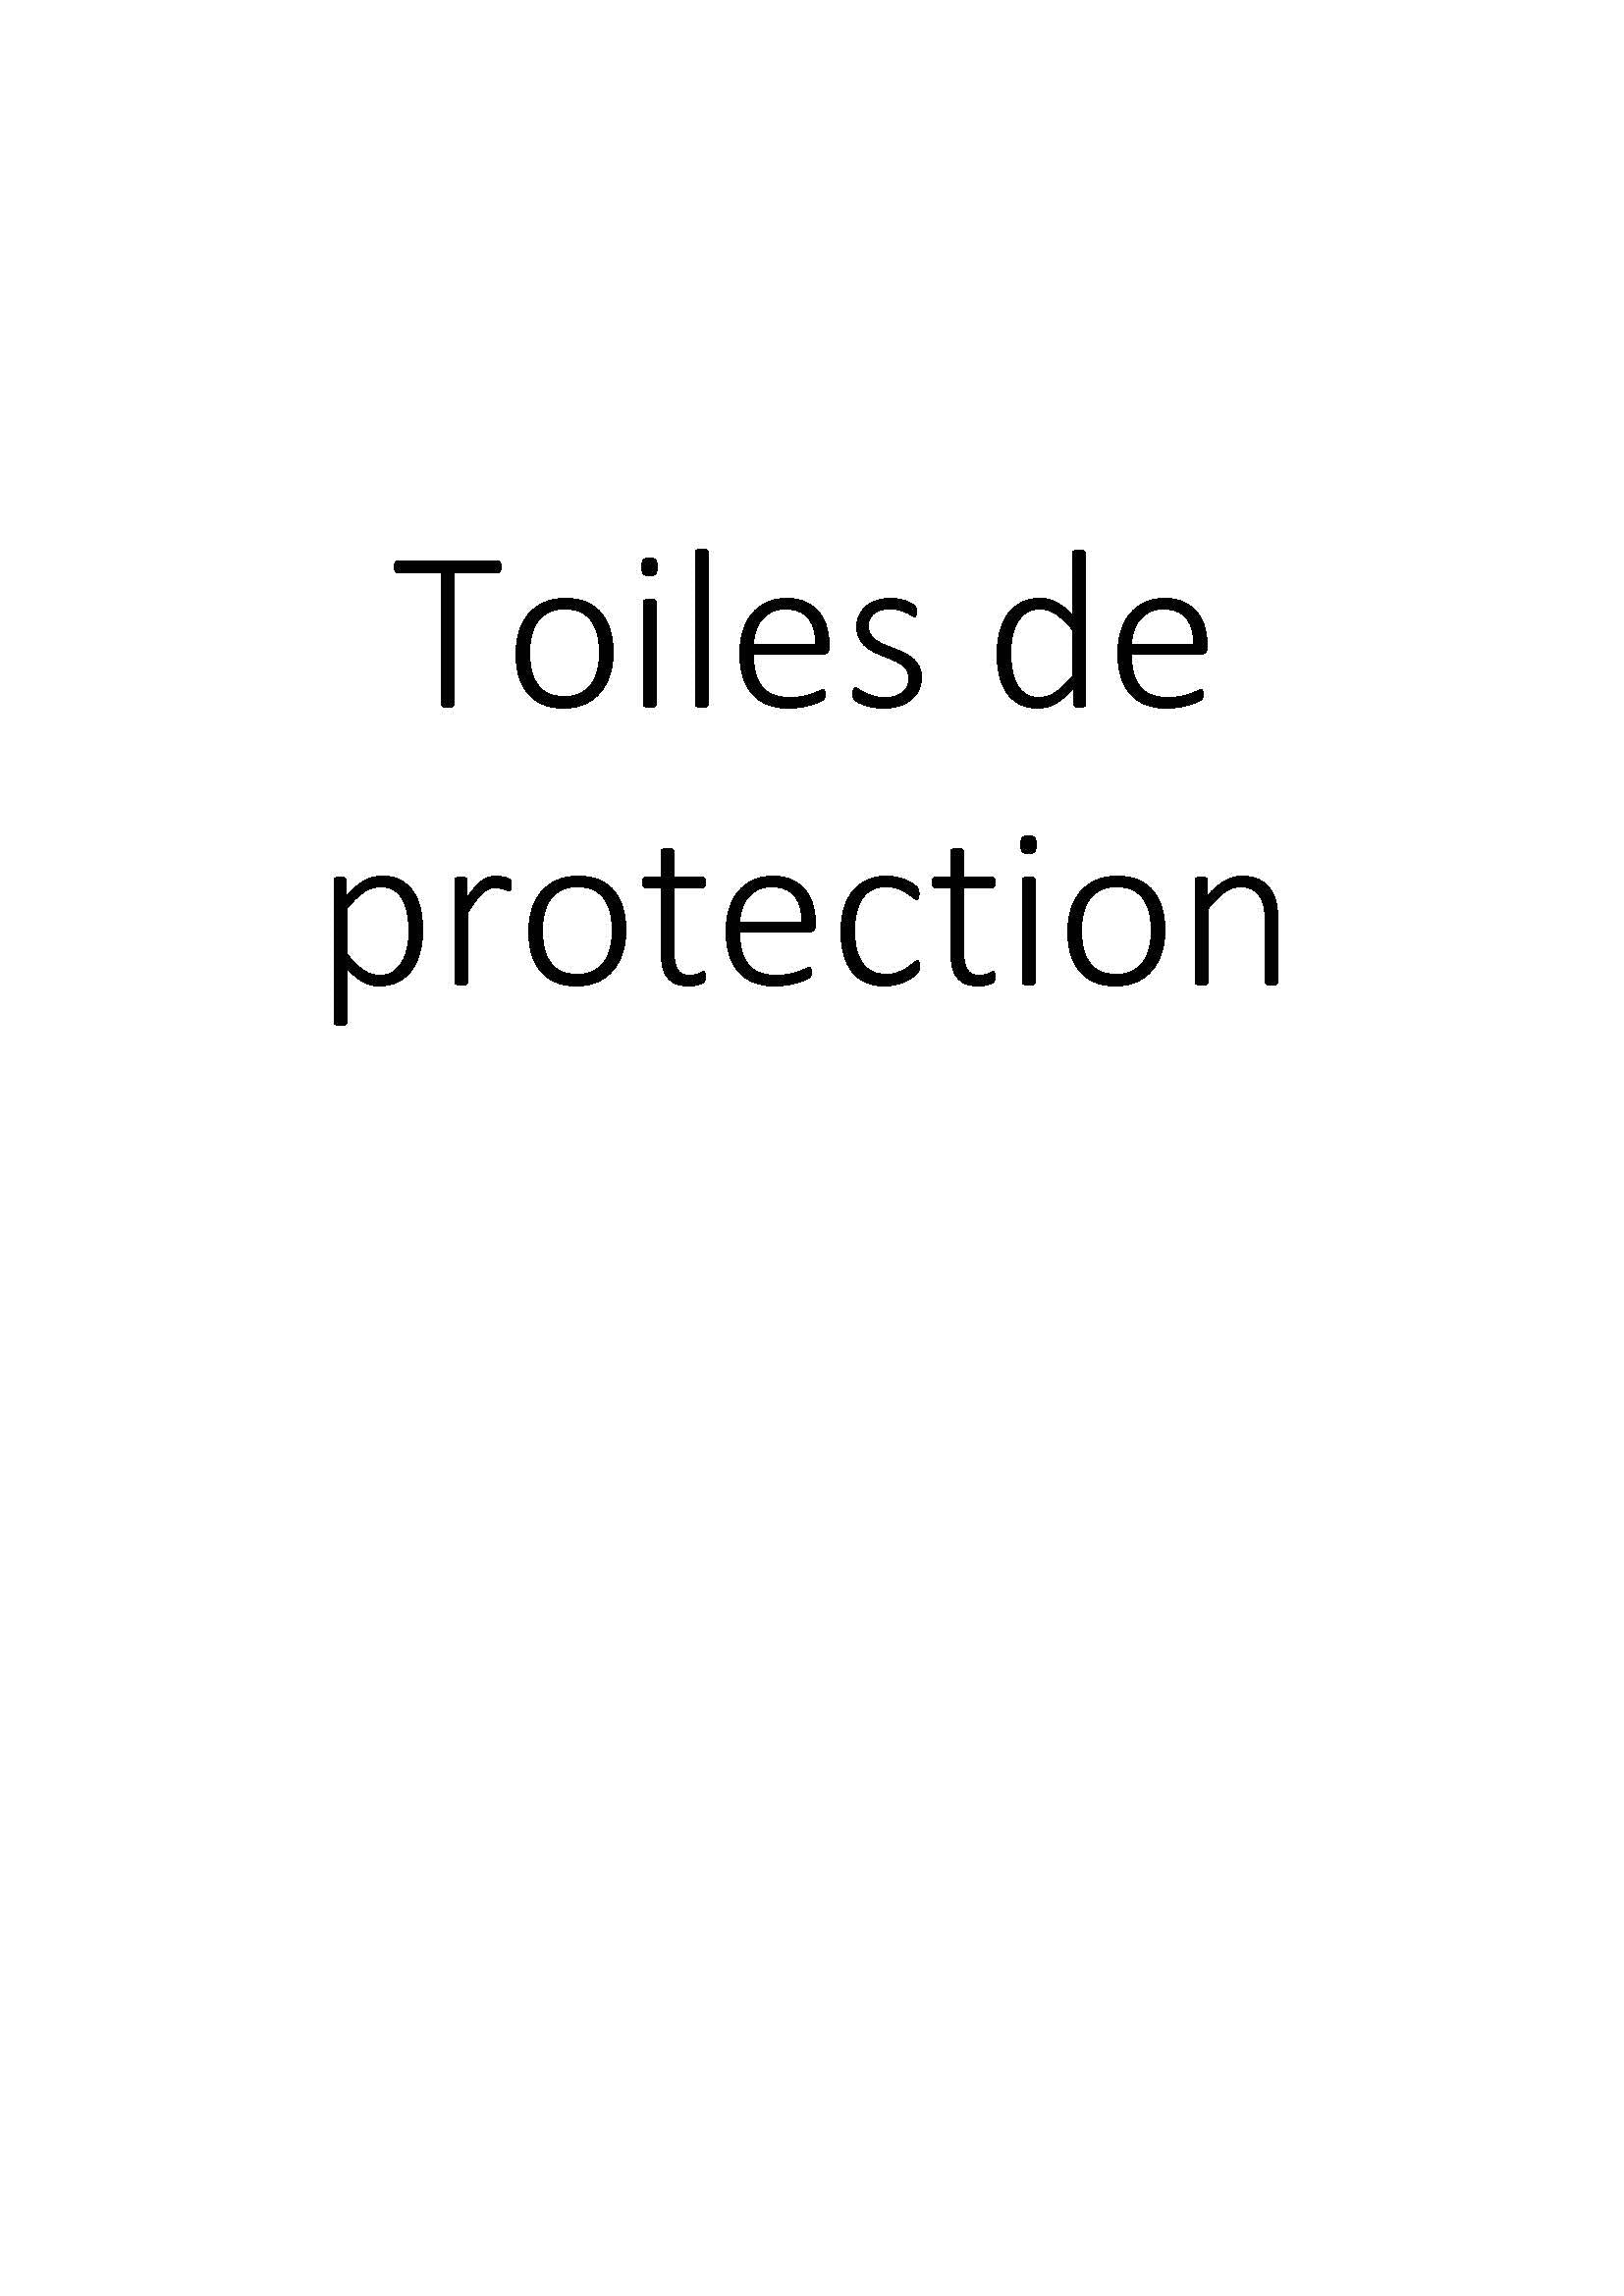 Toiles de protection clicktofournisseur.com